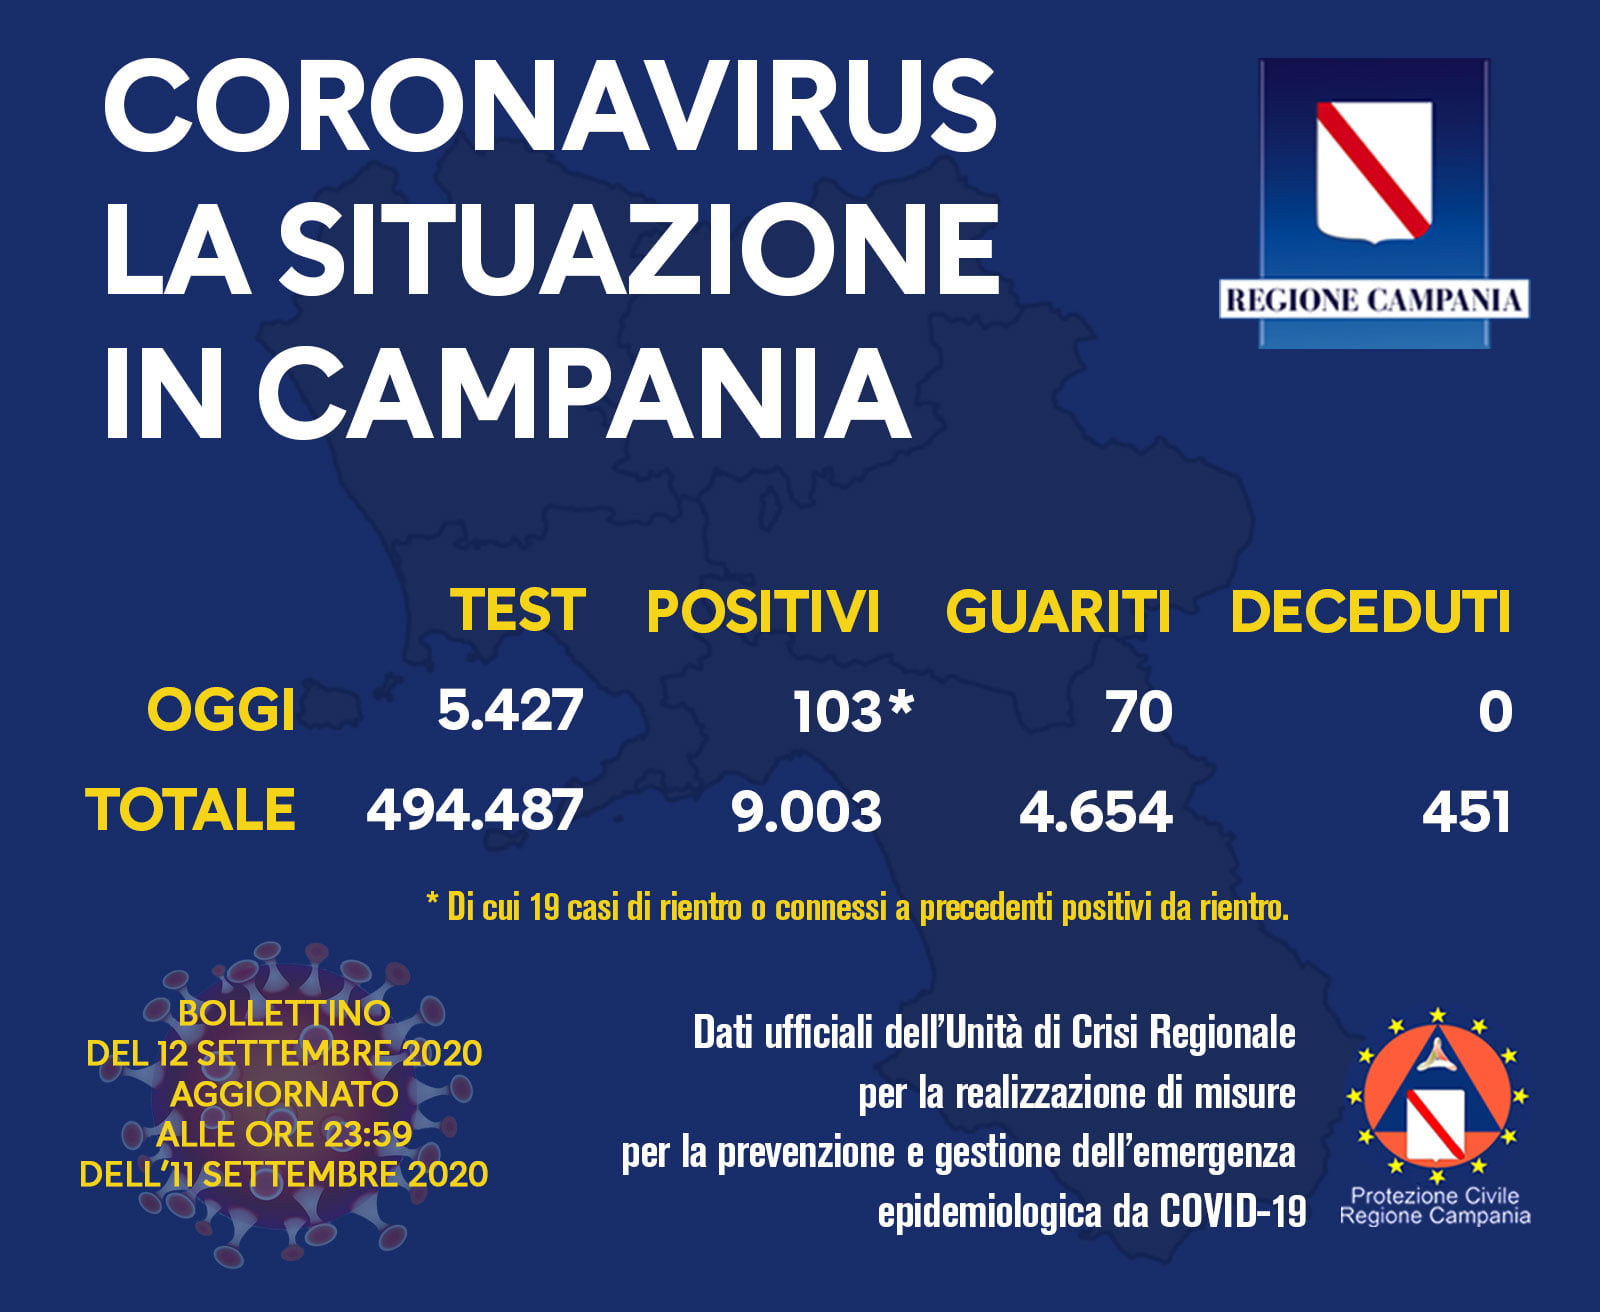 La Campania è la settima regione in Italia per nuovi casi: oggi 103 positivi